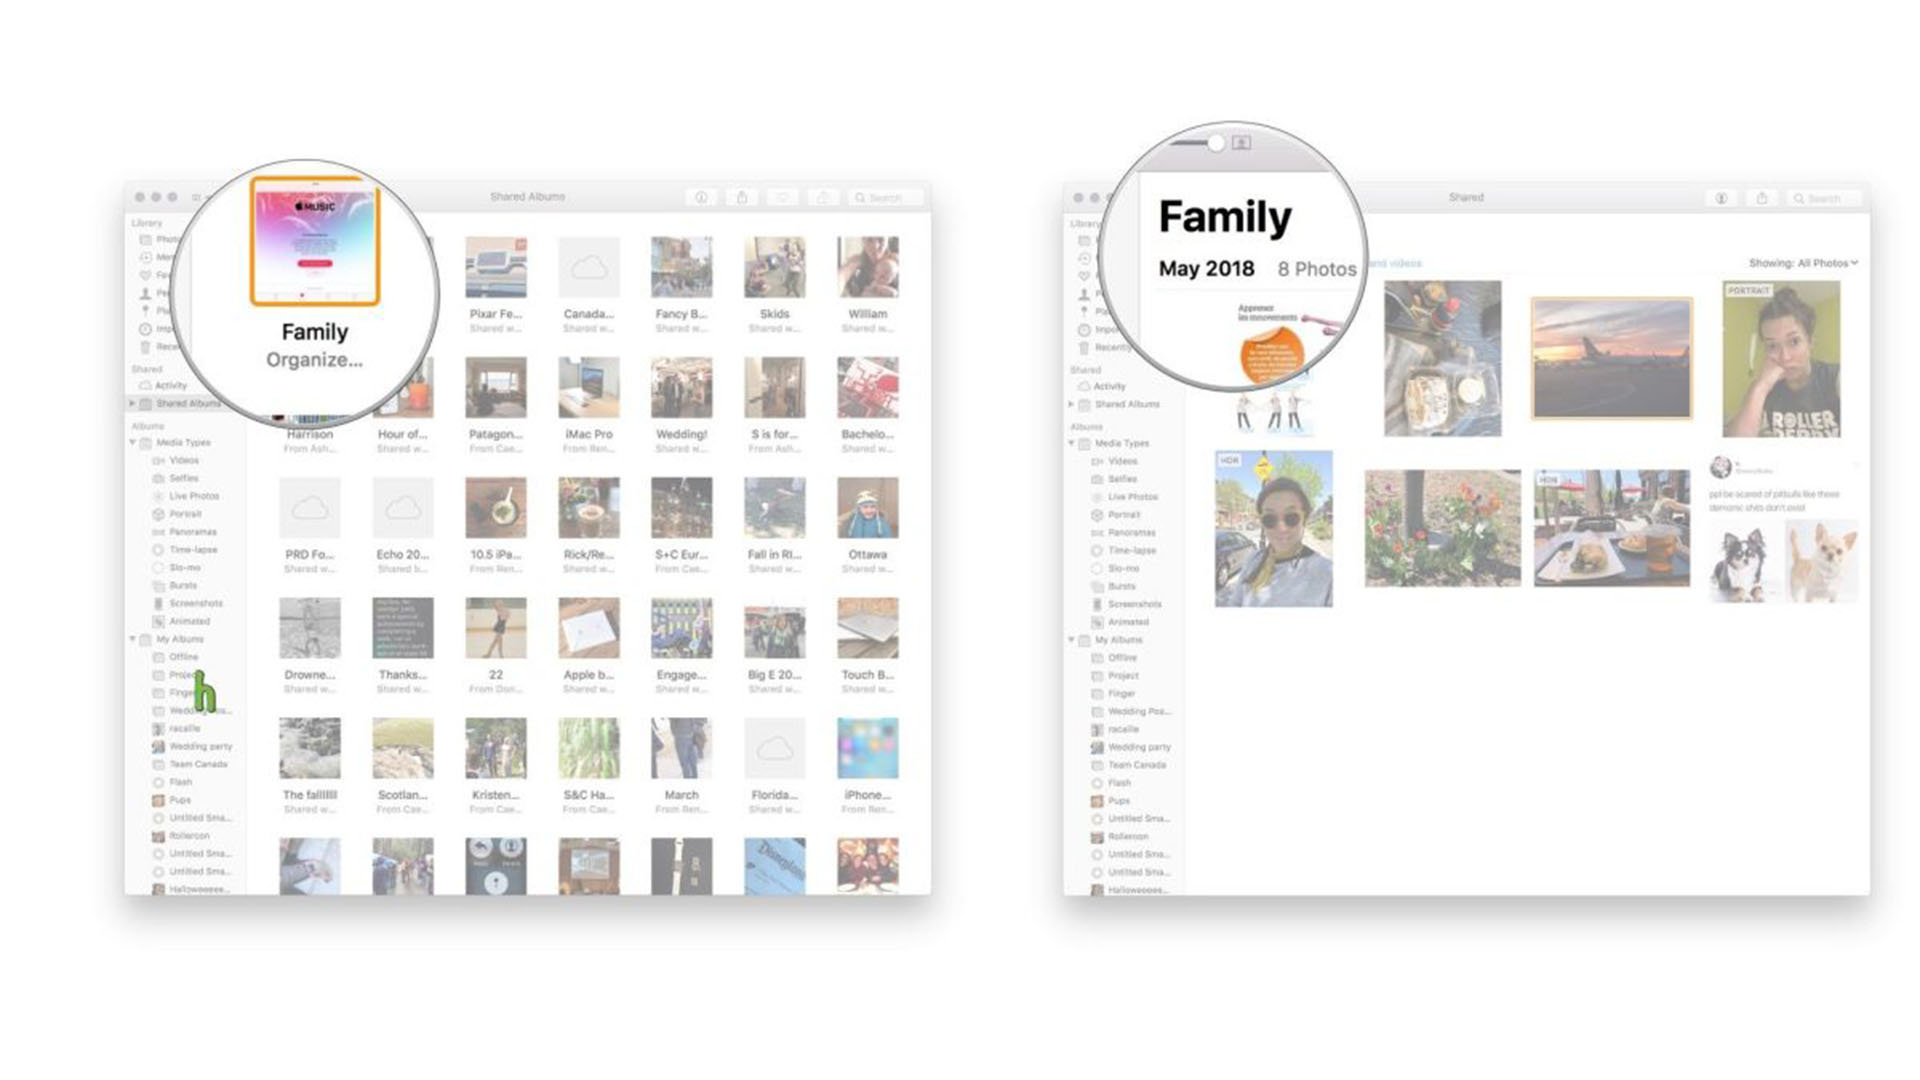 Просмотр семейного альбома на Mac: запуск фотографий, просмотр общих альбомов, выбор семейного альбома